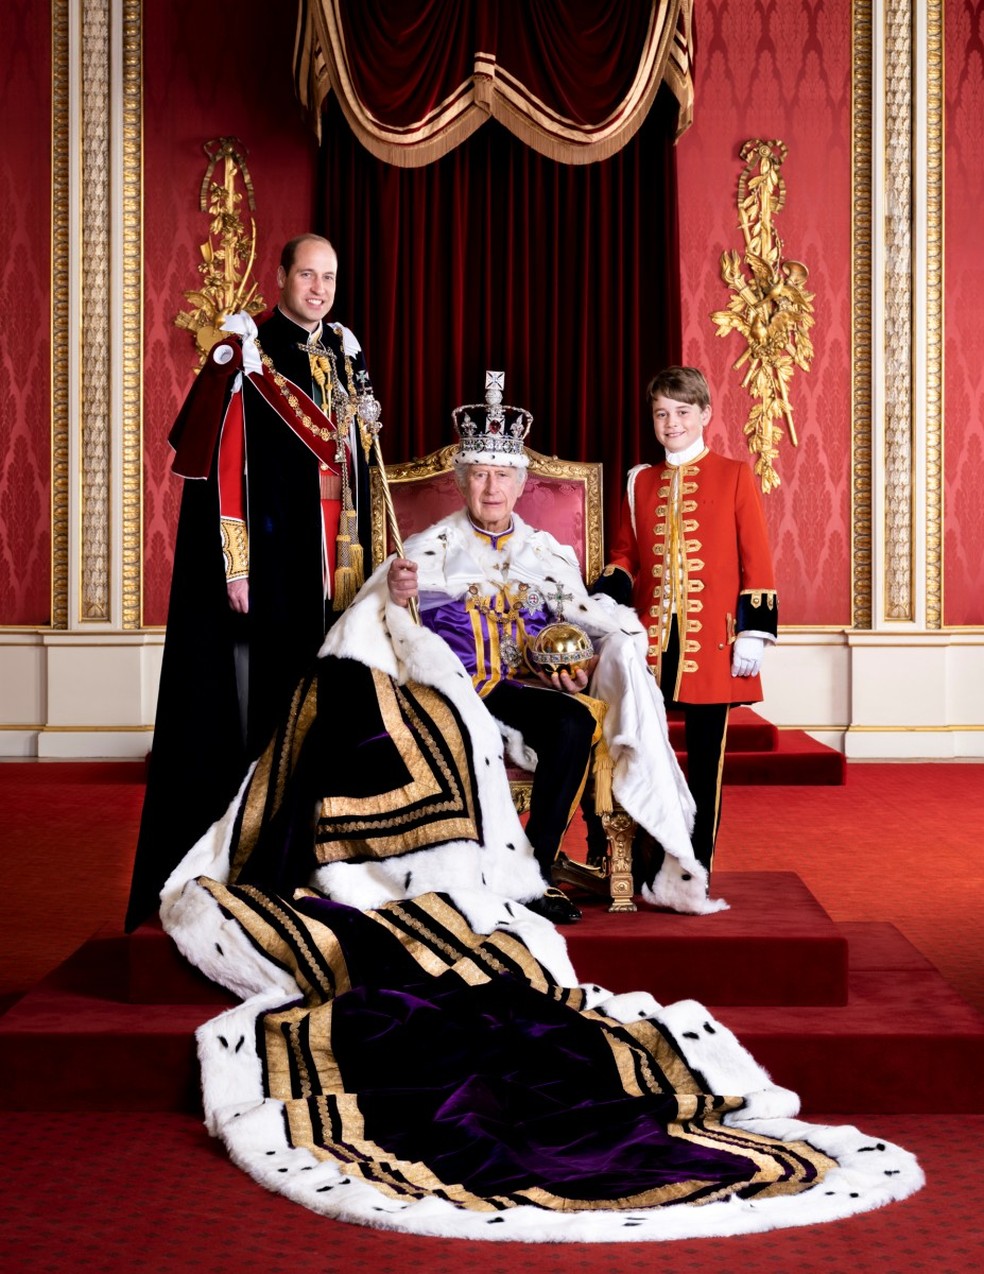 Palácio de Buckingham divulga imagem dos herdeiros da monarquia britânica: à esquerda, o príncipe William; ao centro, o rei Charles III; e à direita, o príncipe George — Foto: BUCKINGHAM PALACE / AFP